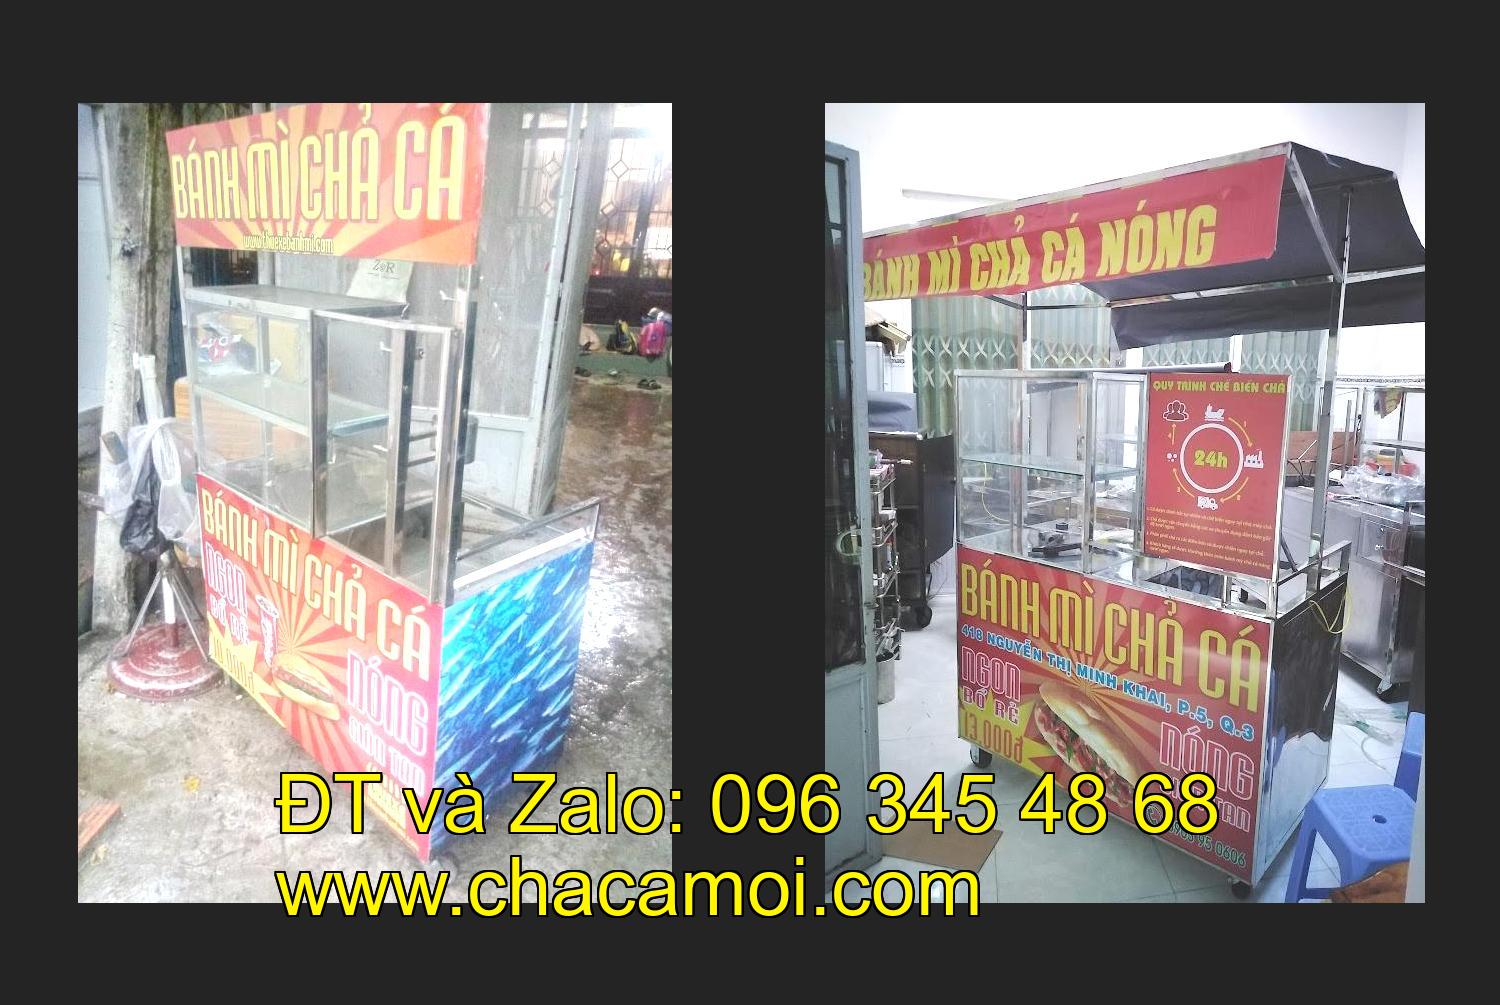 Bán xe bánh mì chả cá tại tỉnh Bắc Ninh